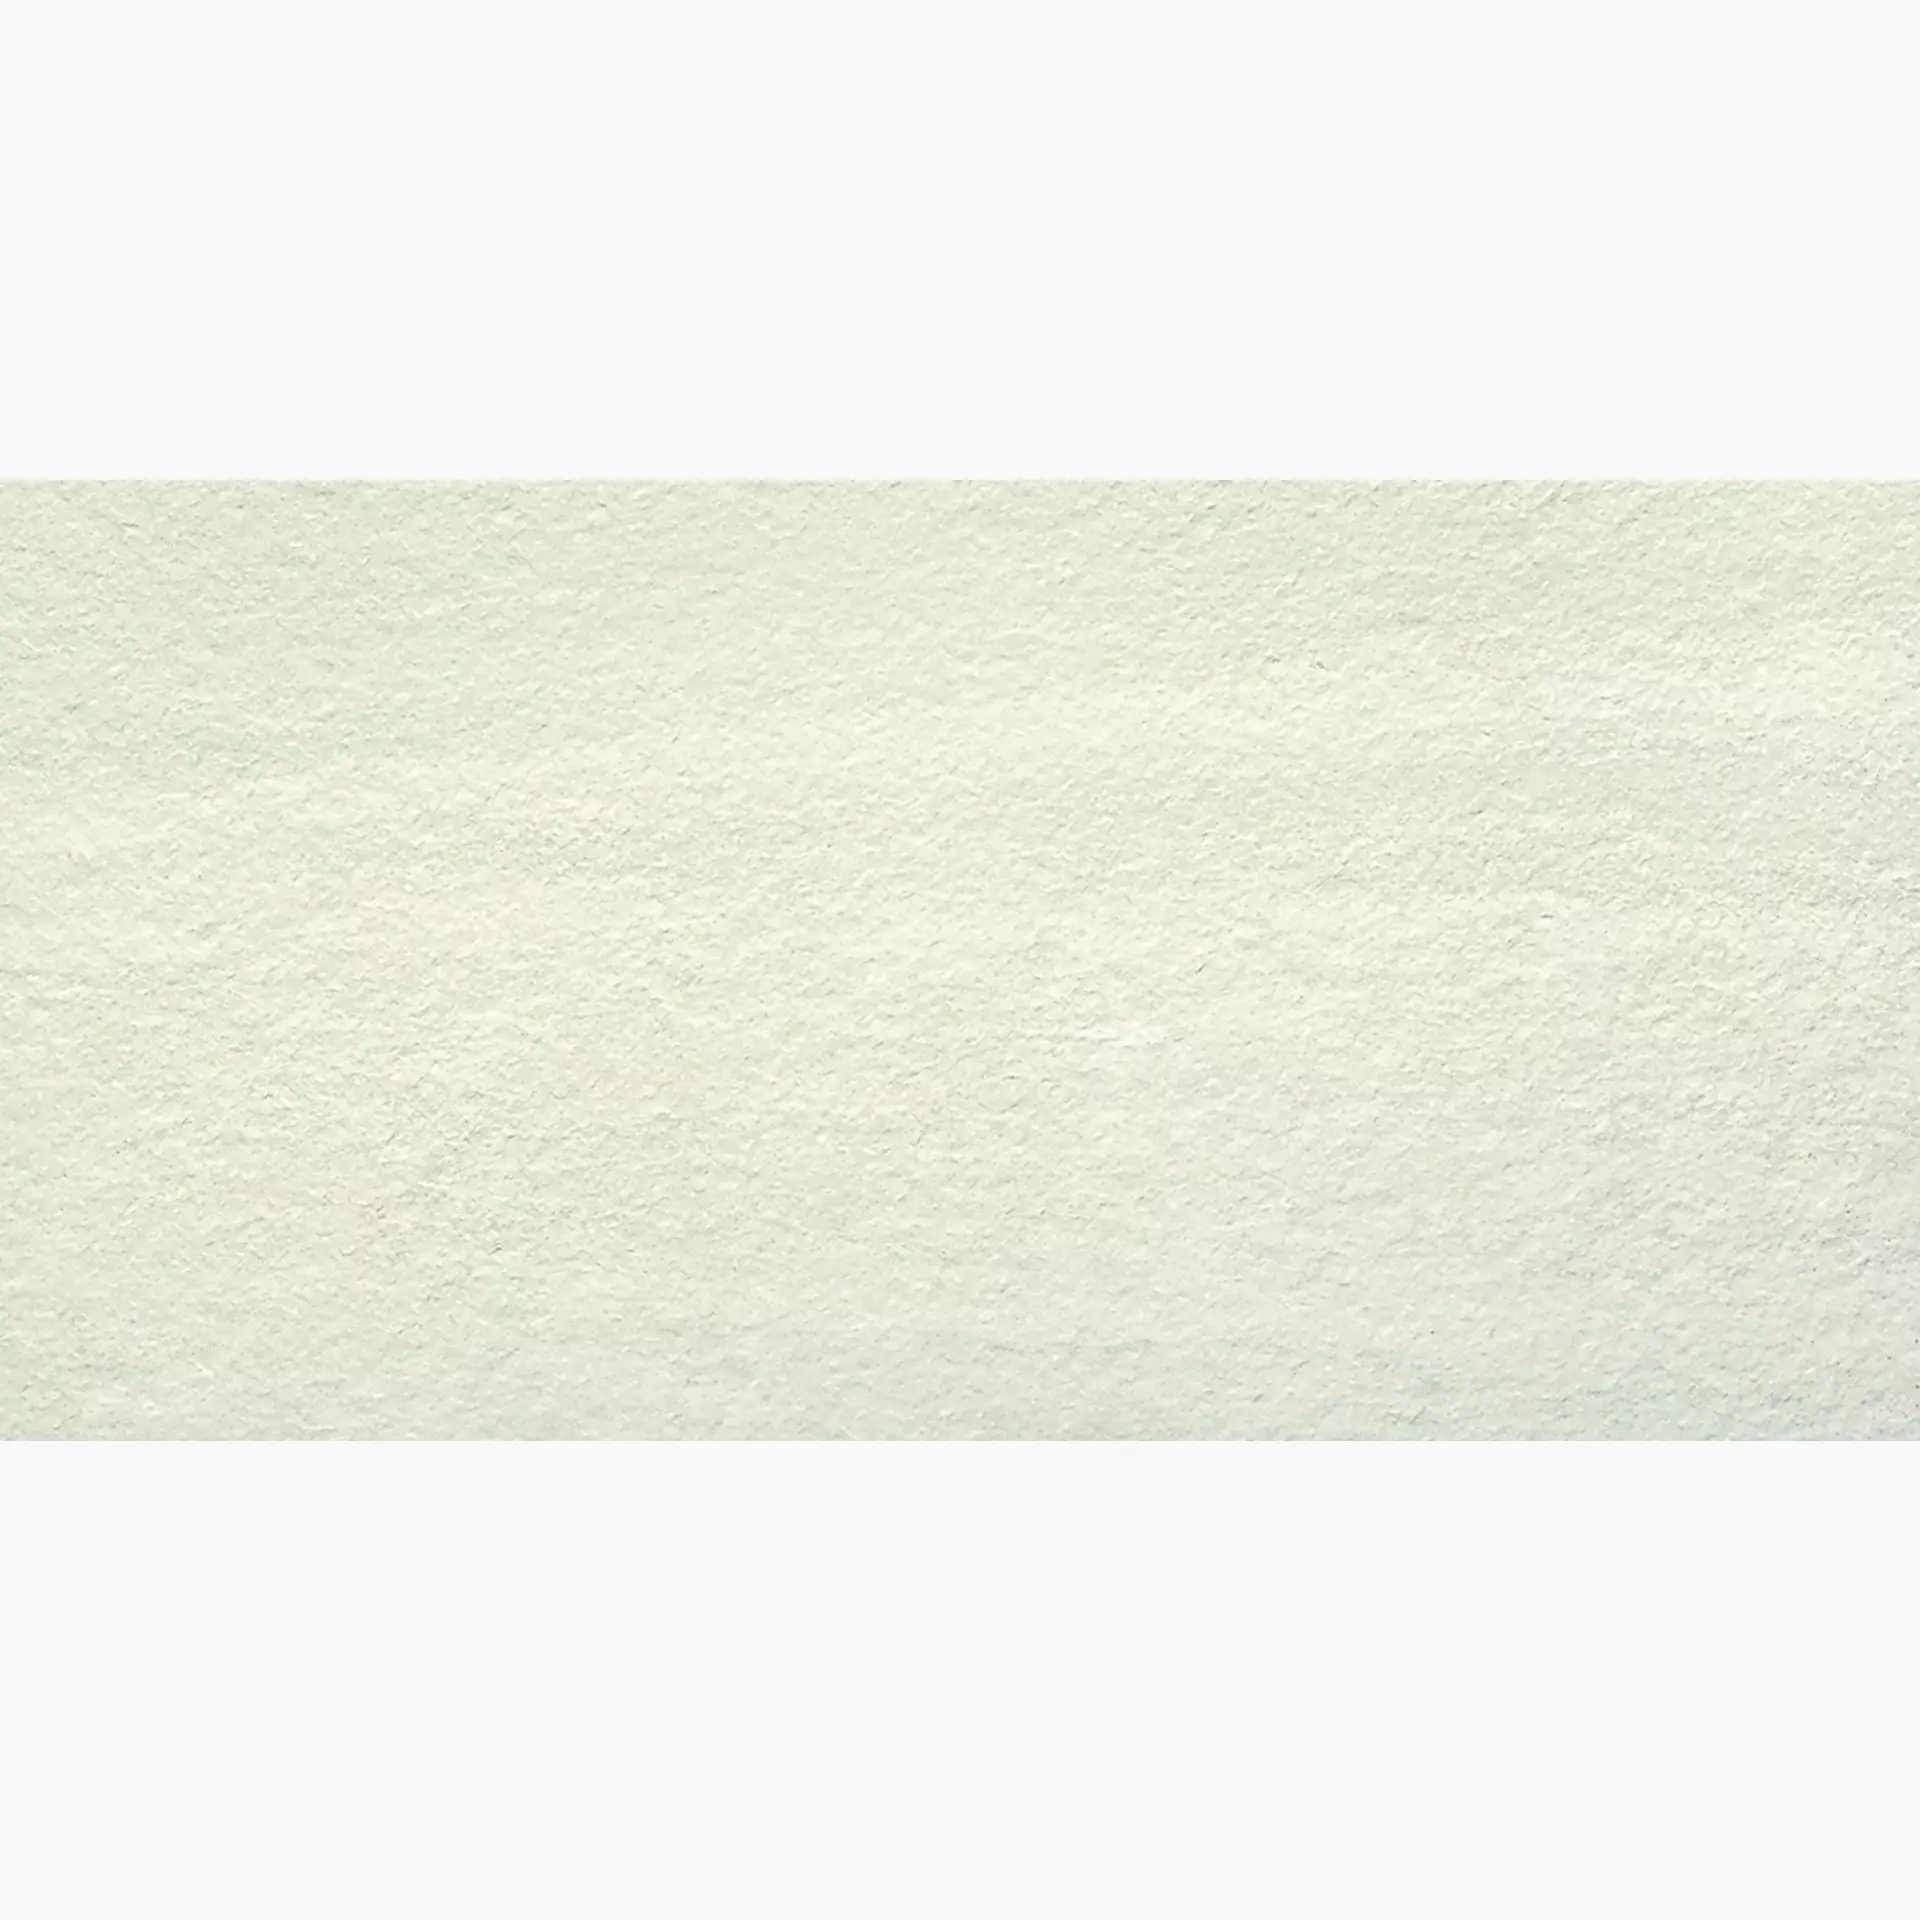 Ergon Stone Project White Strutturato White E4VD strukturiert 60x120cm rektifiziert 9,5mm